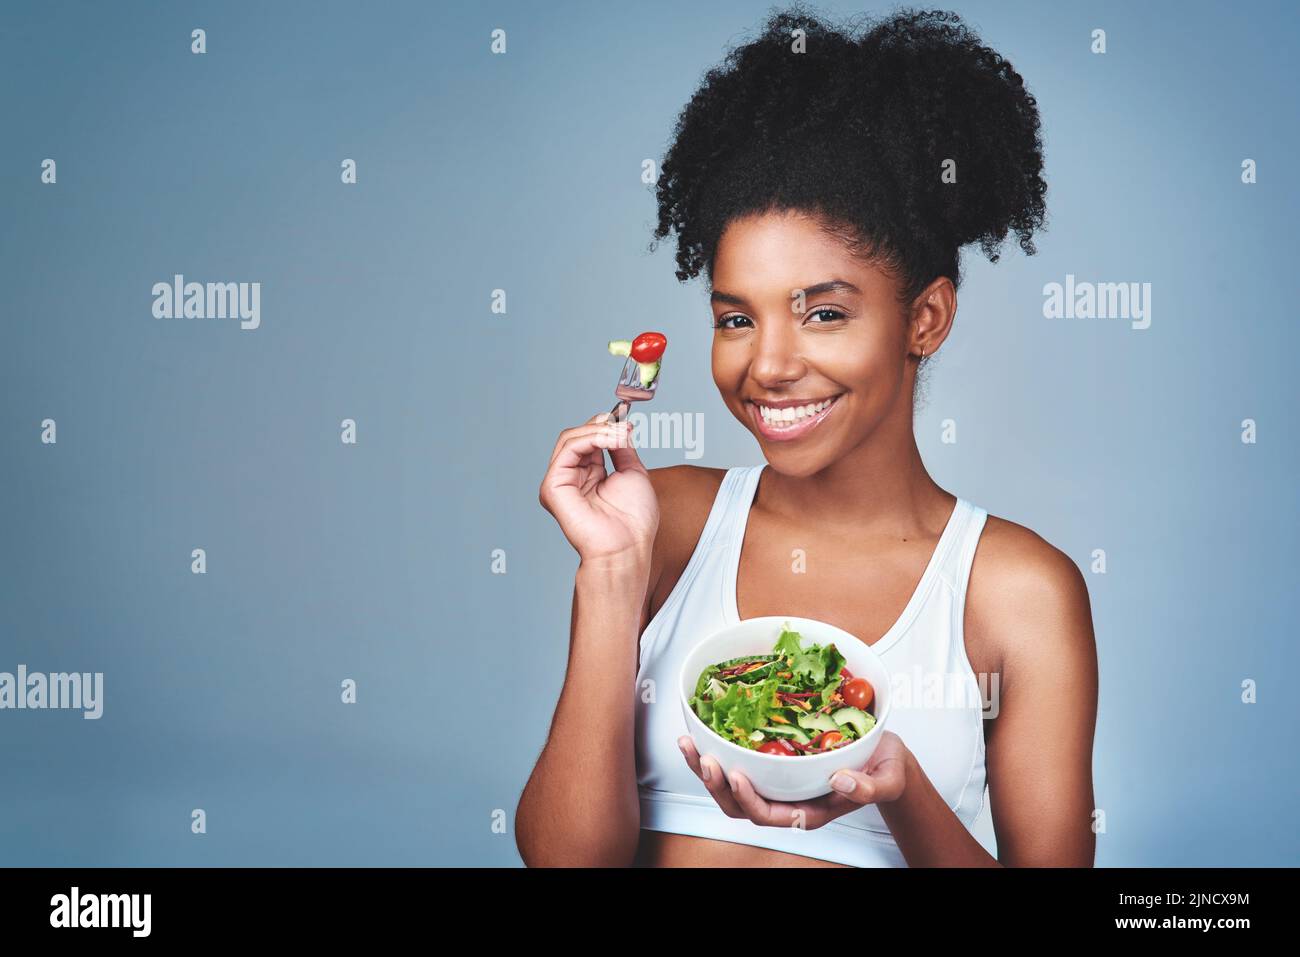 Vous voulez de la bonté. Photo en studio d'une jeune femme attrayante qui mange de la salade sur fond gris. Banque D'Images